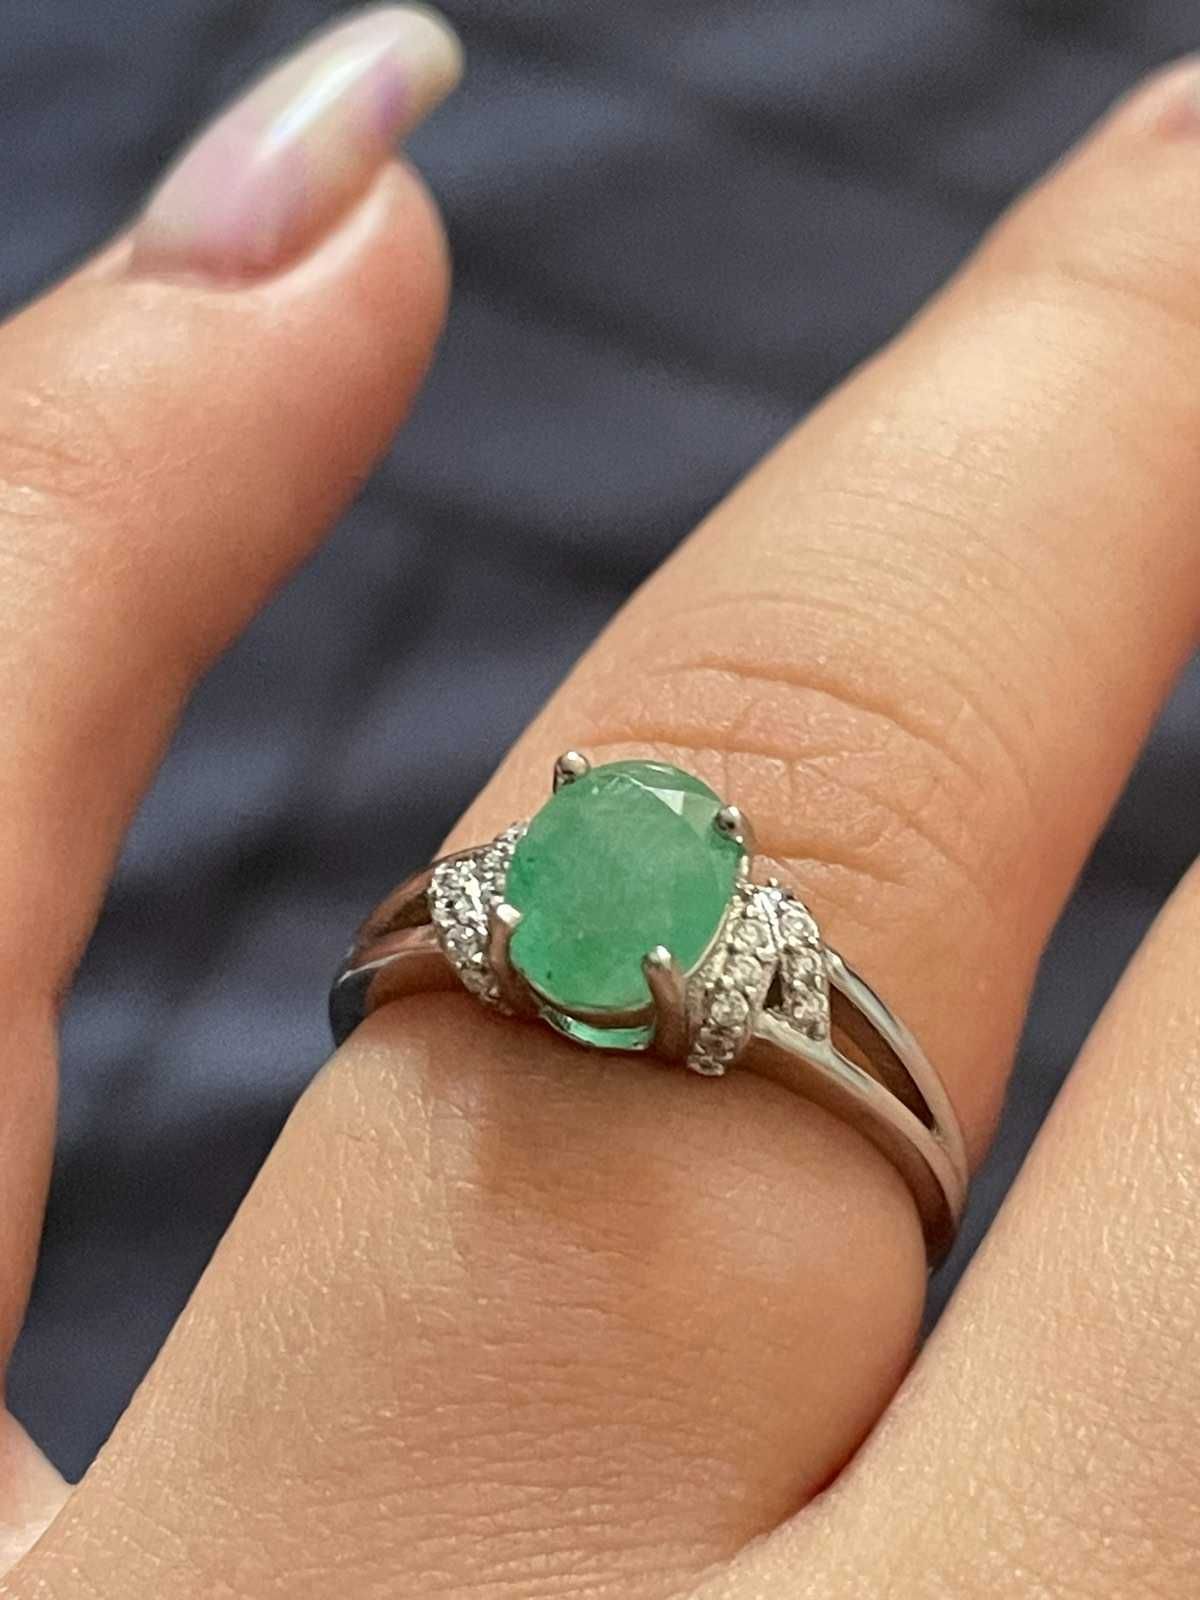 Кольцо с зеленым изумрудом, серебро 925 пробы, размер 16,75